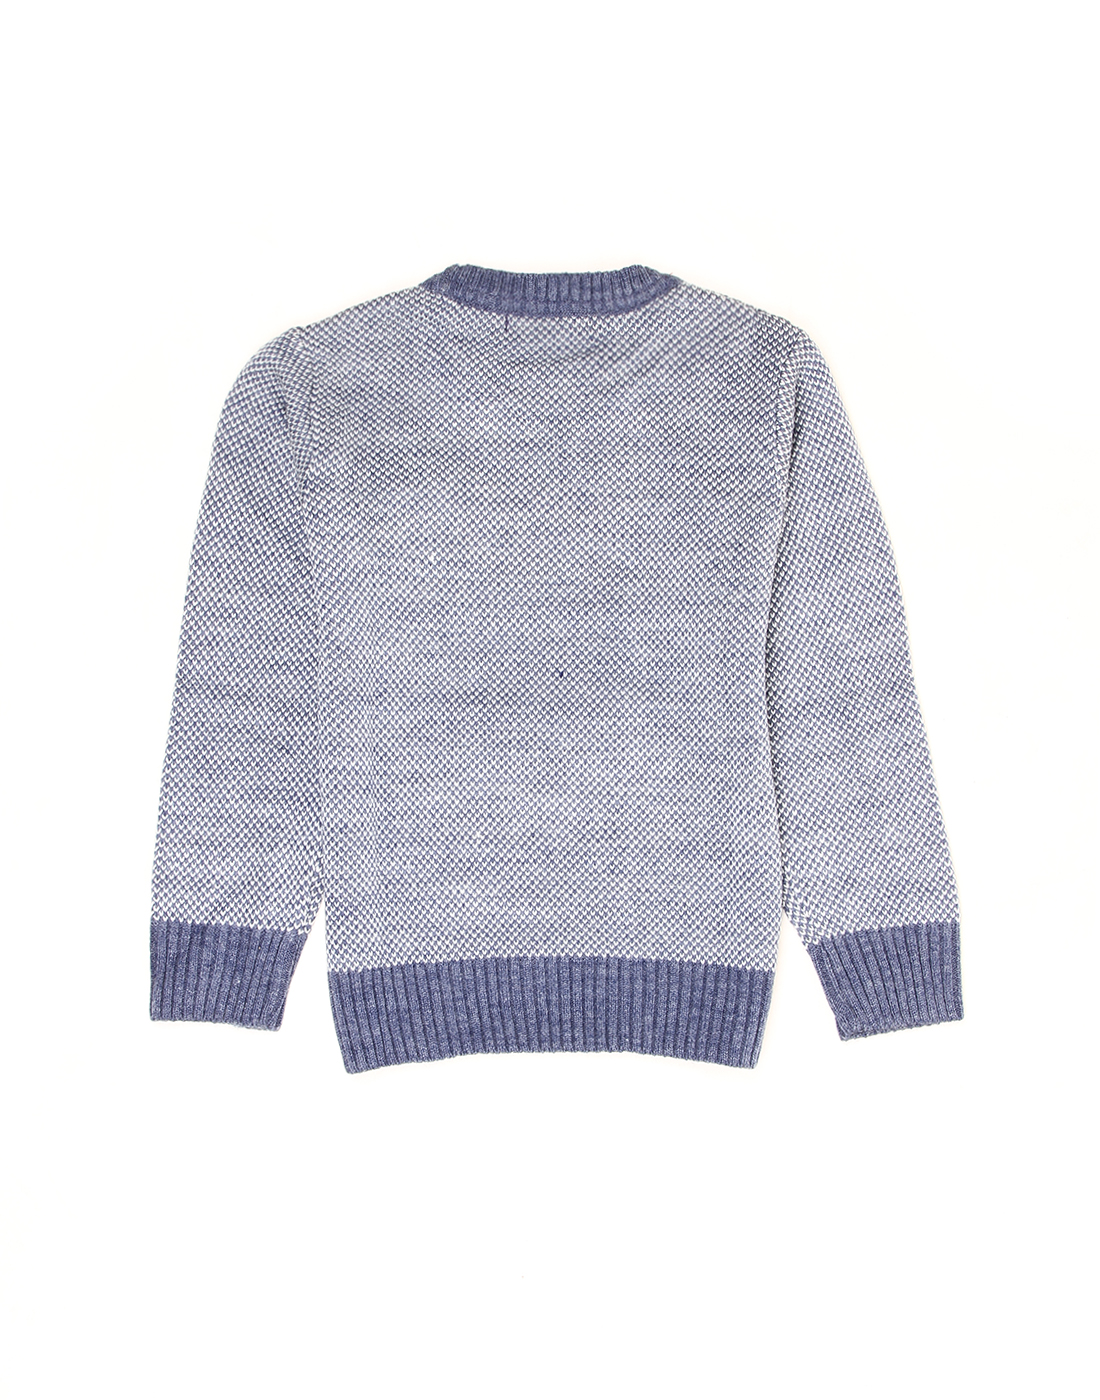 Wingsfield Boys Self Design Blue Sweater